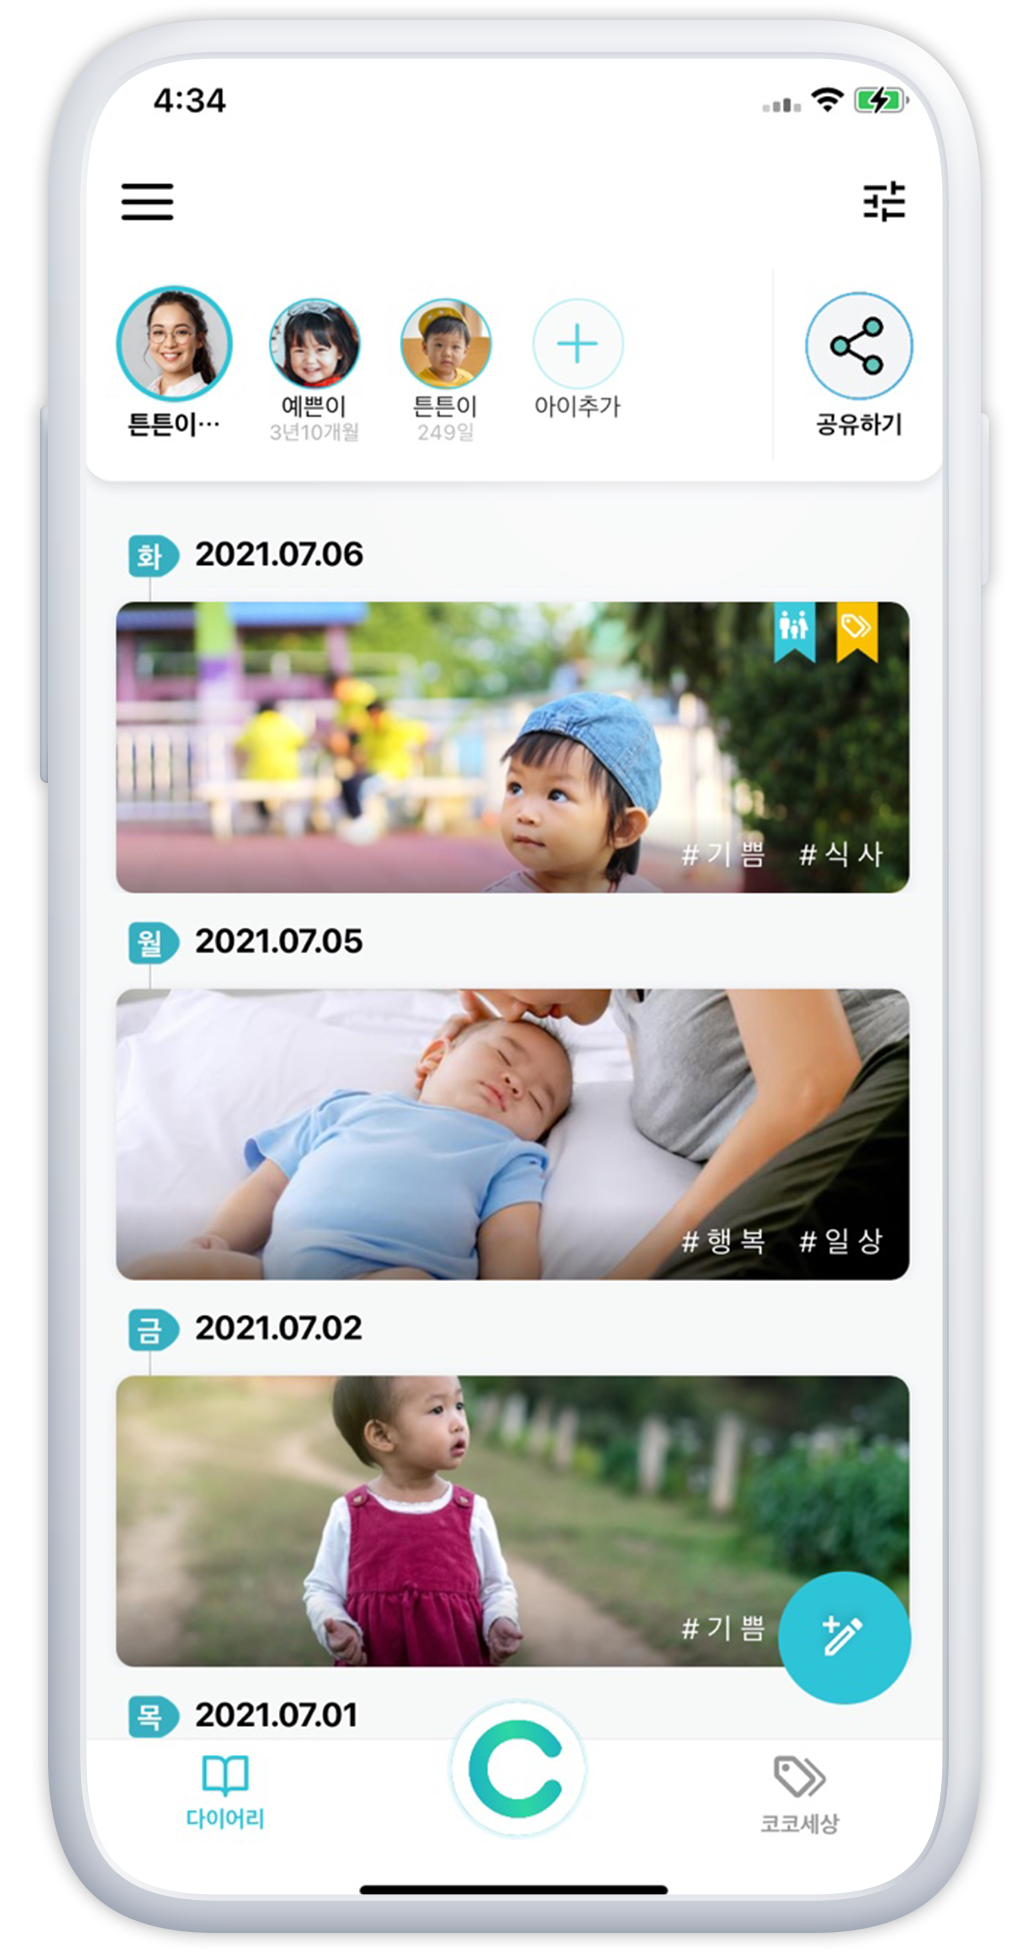 육아정보 공유 어플 치코코- AI가 아이 사진 정리하니 일기쓰고 포인트 받고!